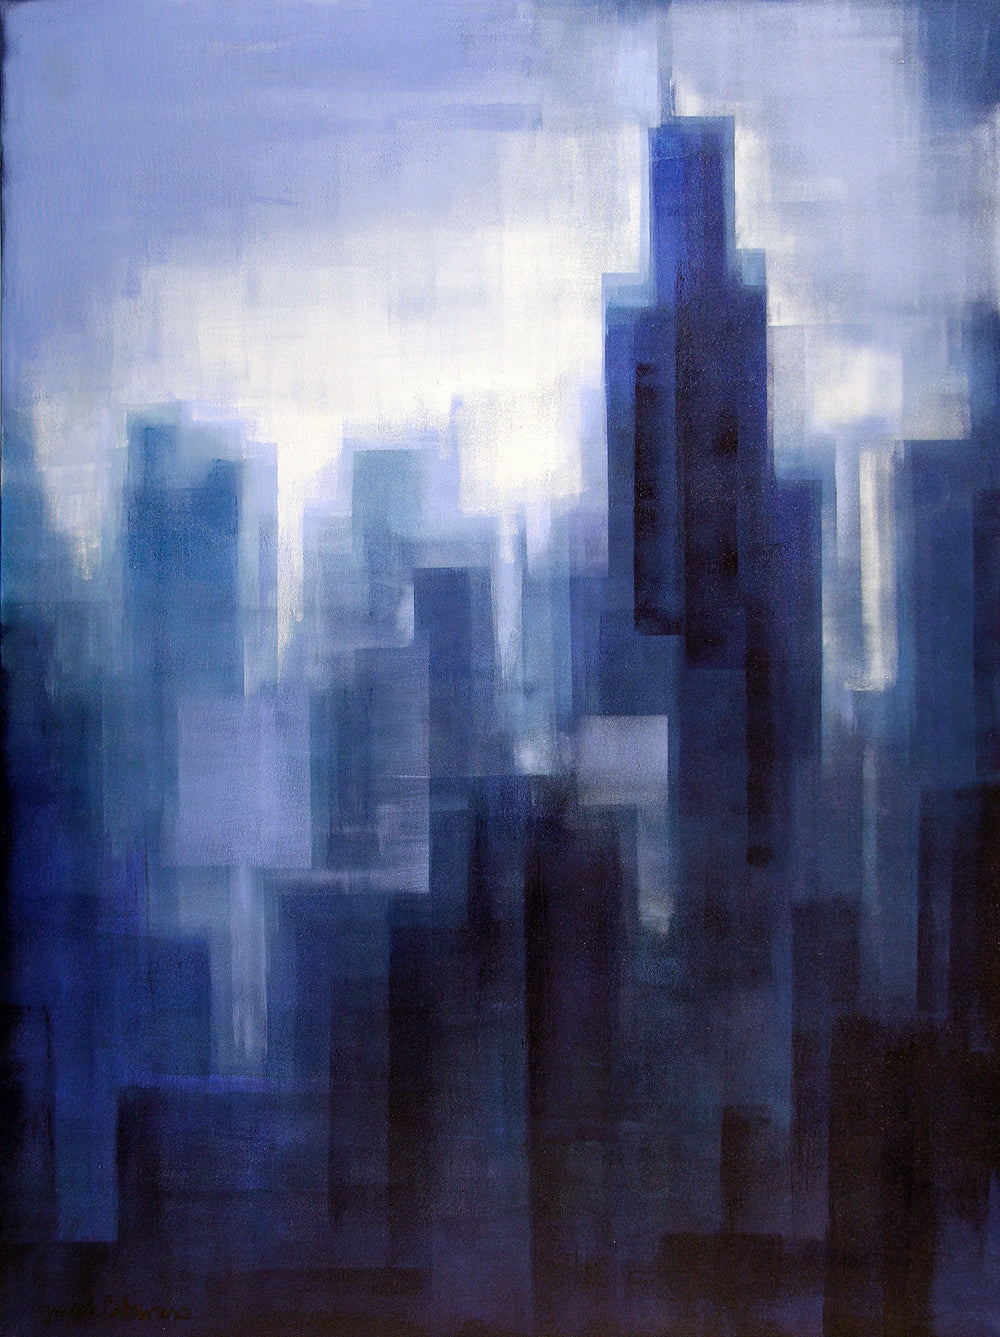 Willis Tower Chicago Canvas Print - "Chicago In The Mist" - Chicago Skyline Art